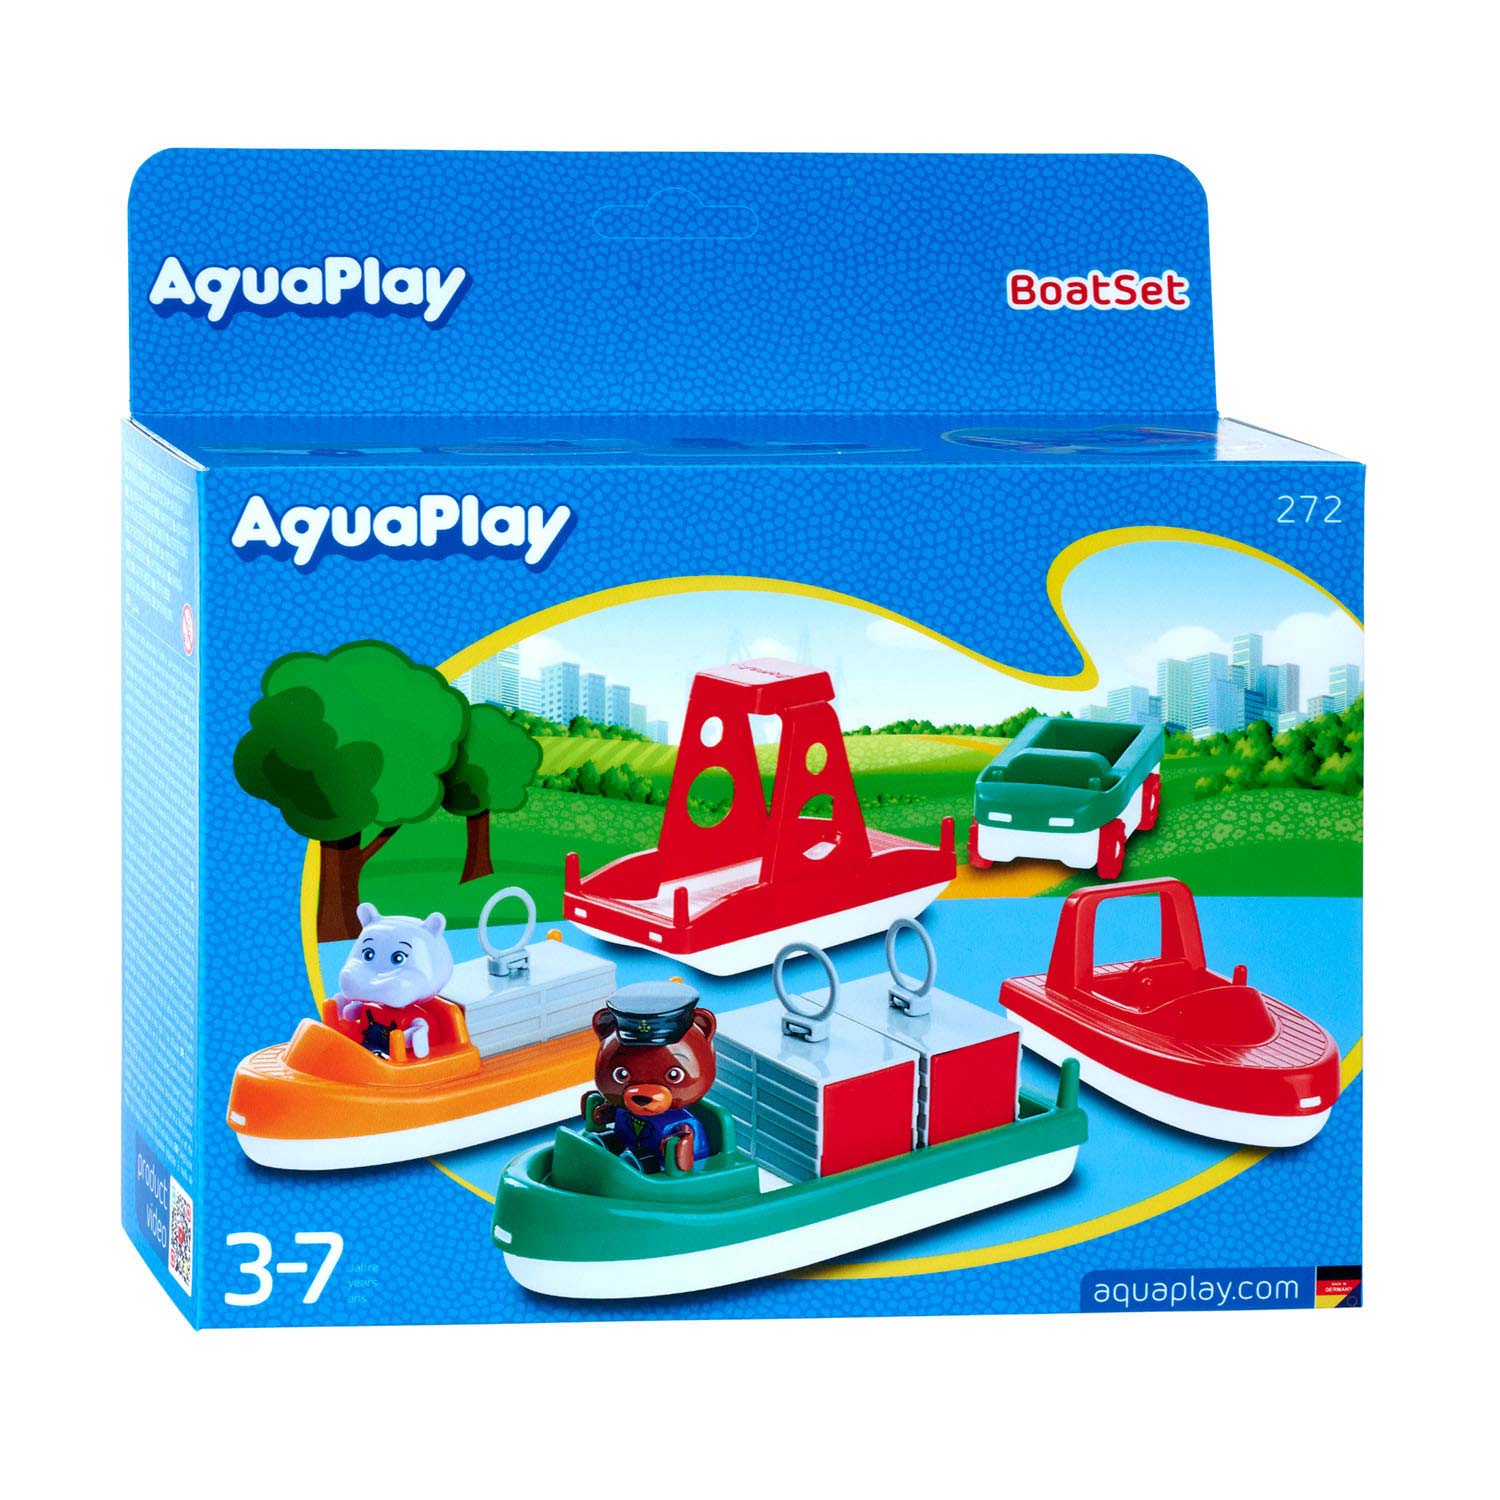 AquaPlay 272 - Bootsset